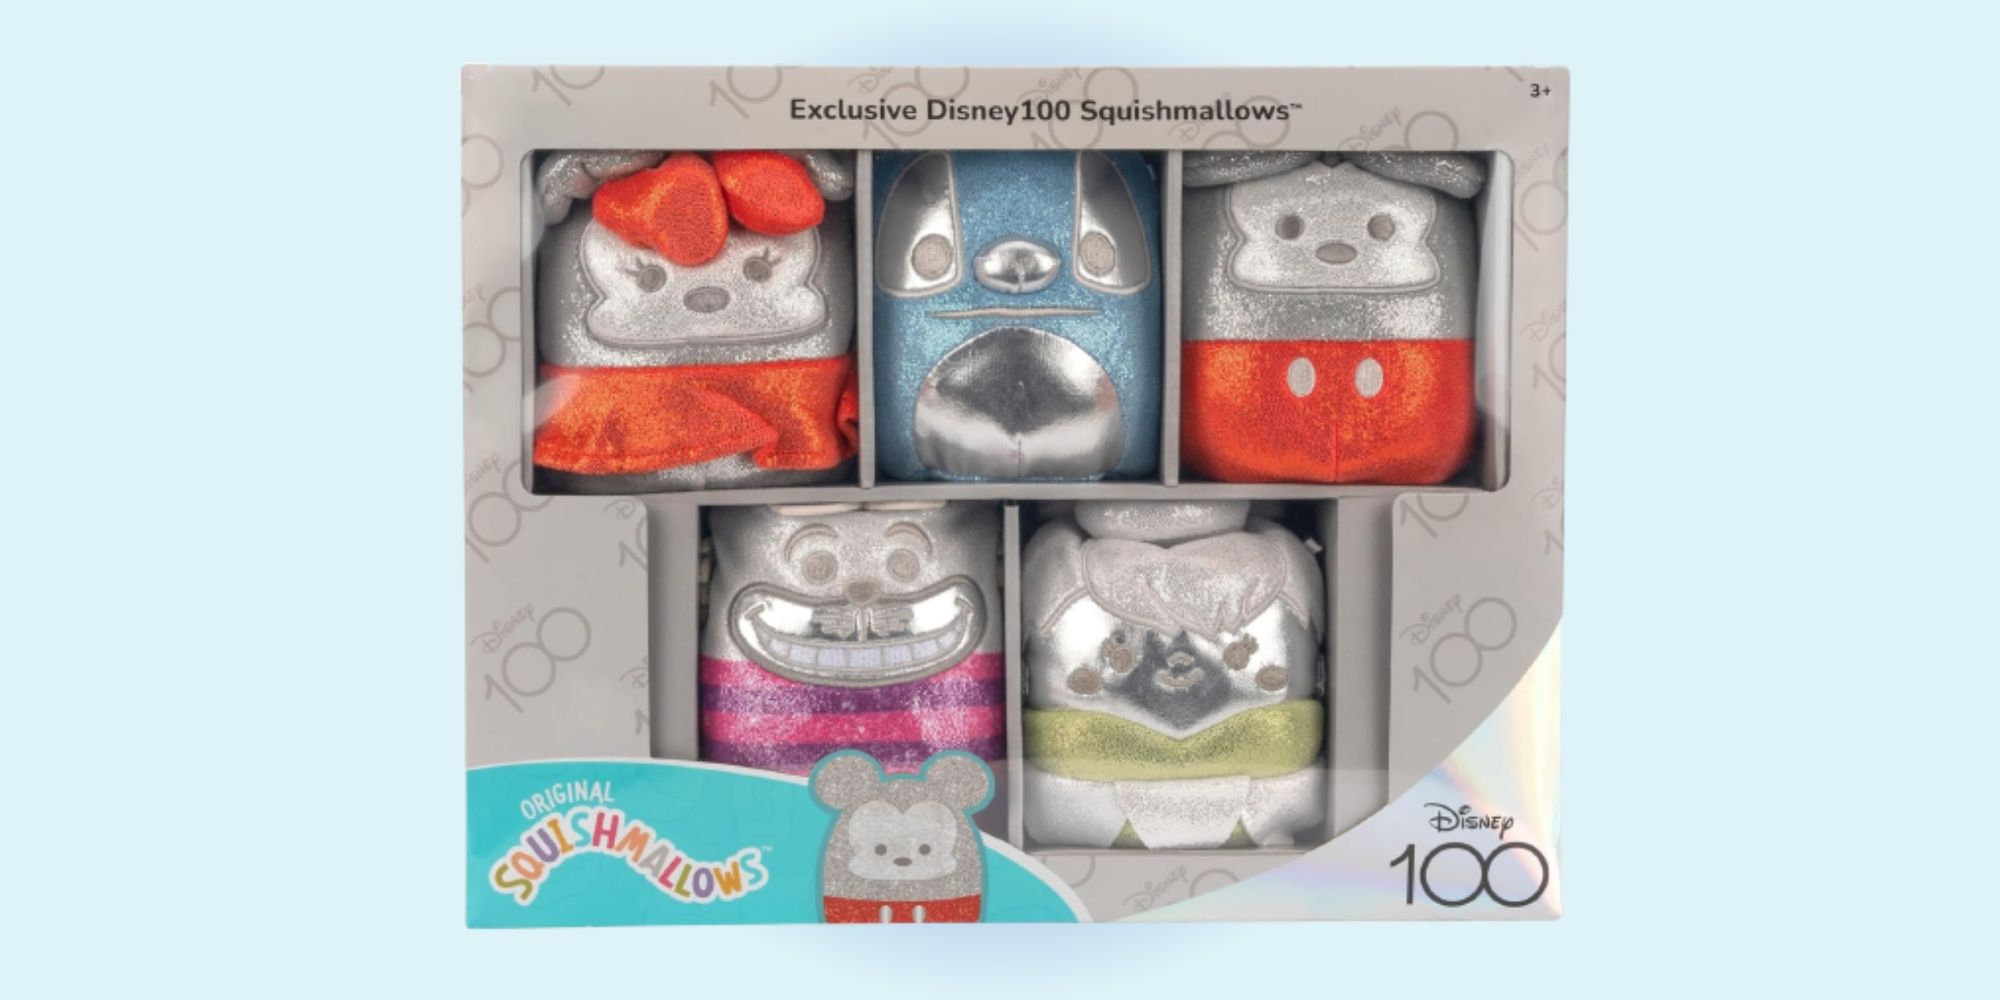 New Disney100 Squishmallows Mini Plush Set Now Available On Amazon